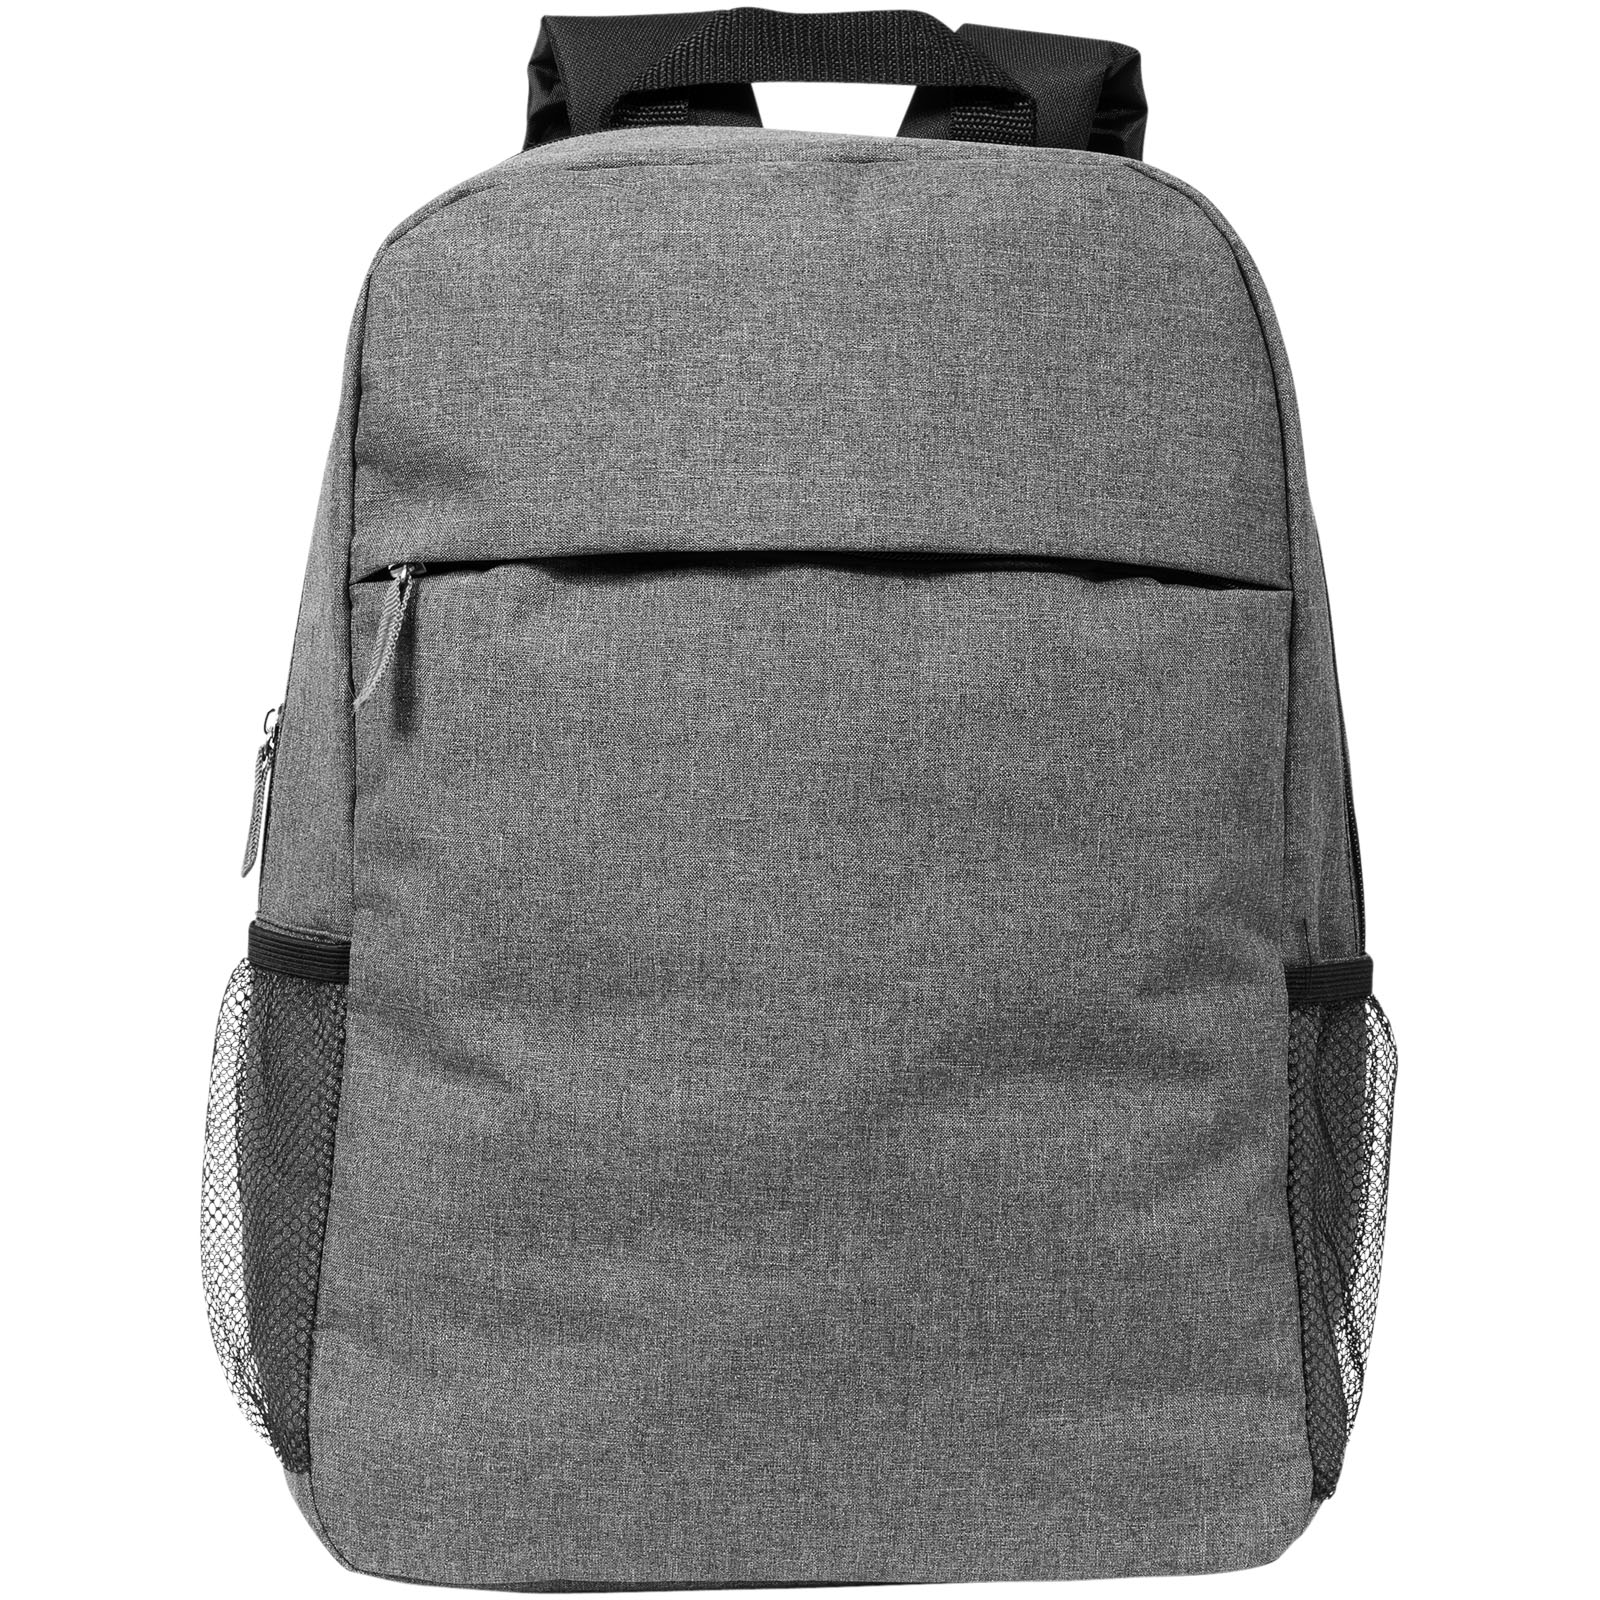 Advertising Laptop Backpacks - Hoss 15